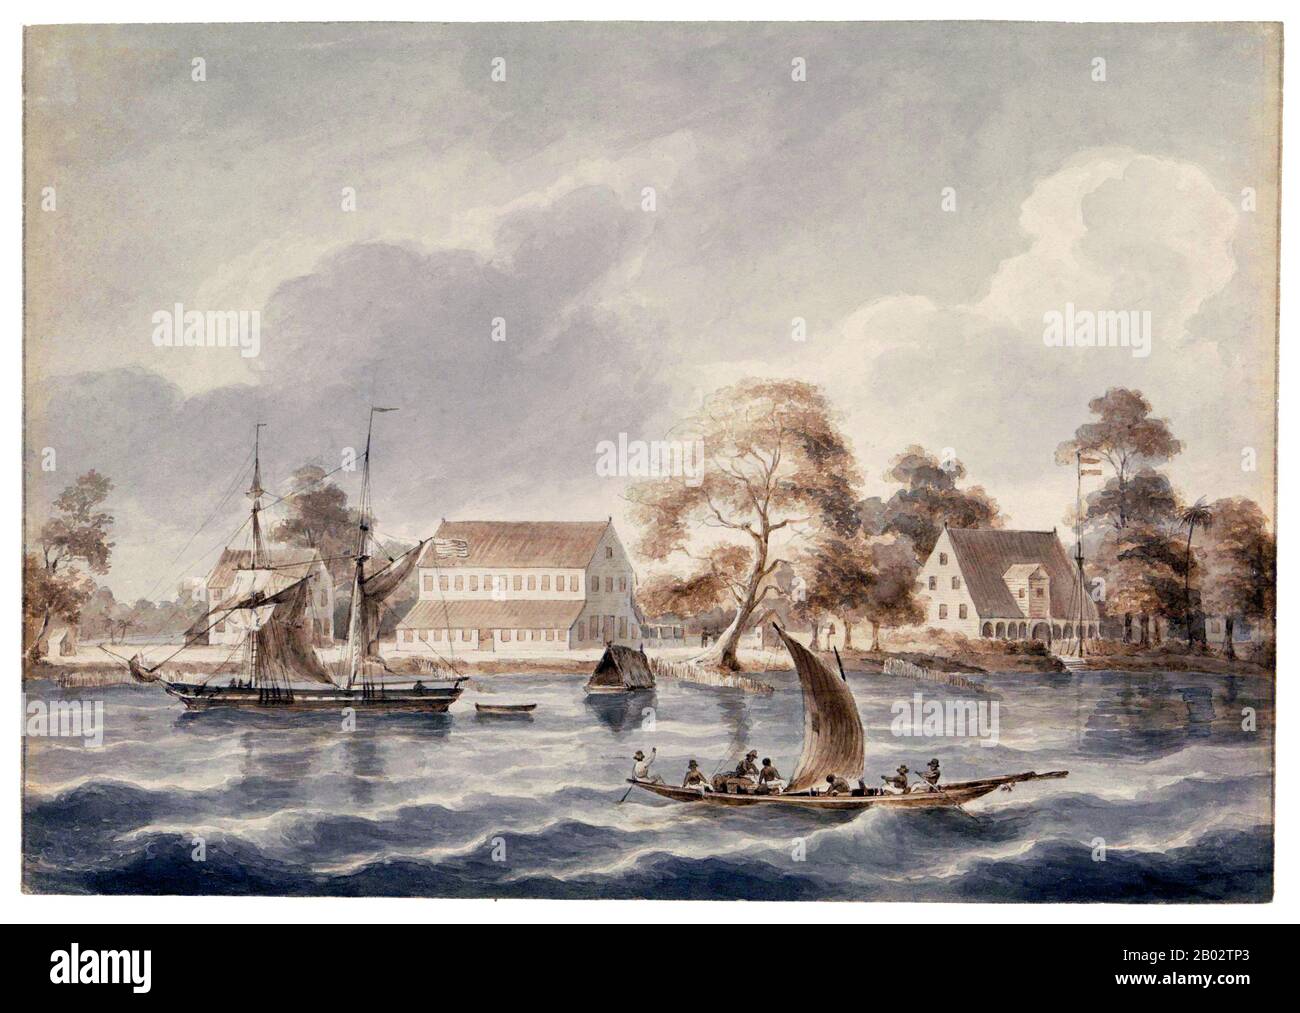 Le plus petit pays d'Amérique du Sud, la diversité du Suriname a commencé au XVIe siècle lorsque des explorateurs français, espagnols et anglais ont visité la région. Un siècle plus tard, les colonies de plantations ont été établies par les Néerlandais et les Anglais le long des nombreux fleuves dans les plaines fertiles du Guyana. Des différends se sont posés, comme jamais, entre les Néerlandais et les Anglais. En 1667, les Pays-Bas décidèrent de garder l'anglais de la colonie naissante de plantations du Suriname, issue du Traité de Breda. Les Anglais ont été laissés à New Amsterdam, un petit poste commercial en Amérique du Nord, qui est devenu plus tard New York City. En tant que plantation Banque D'Images